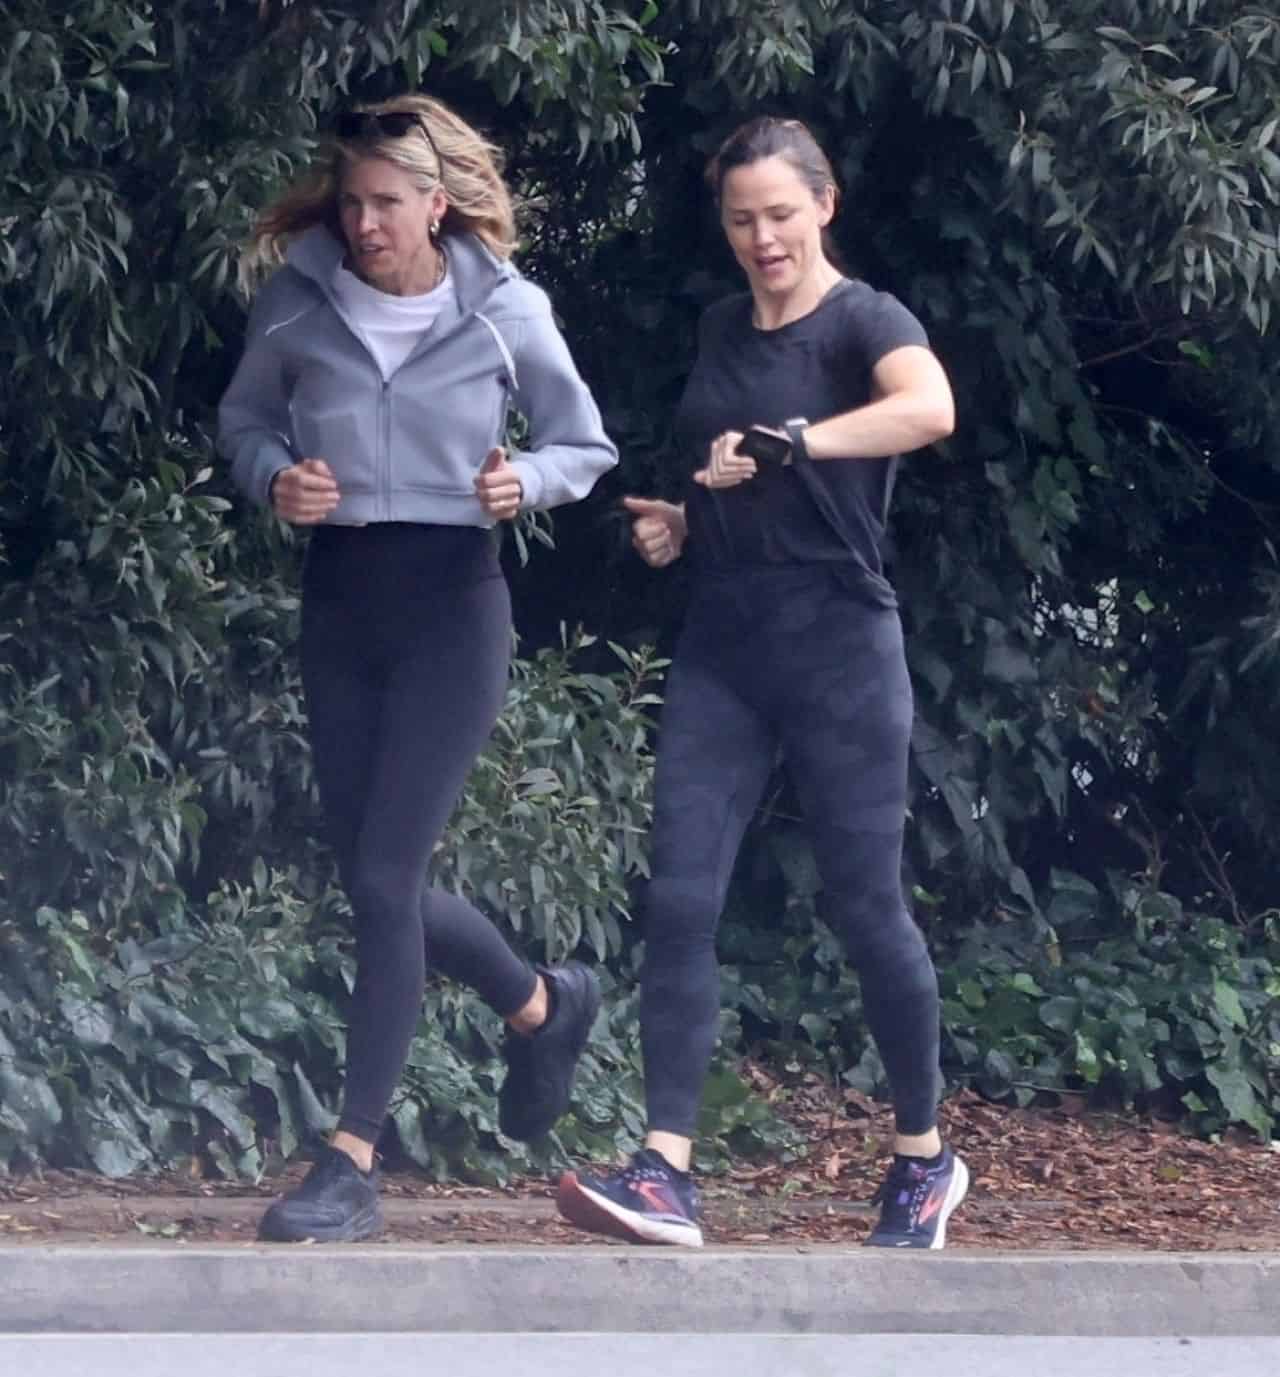 Jennifer Garner Doesn't Let the Rain Stop Her Workout